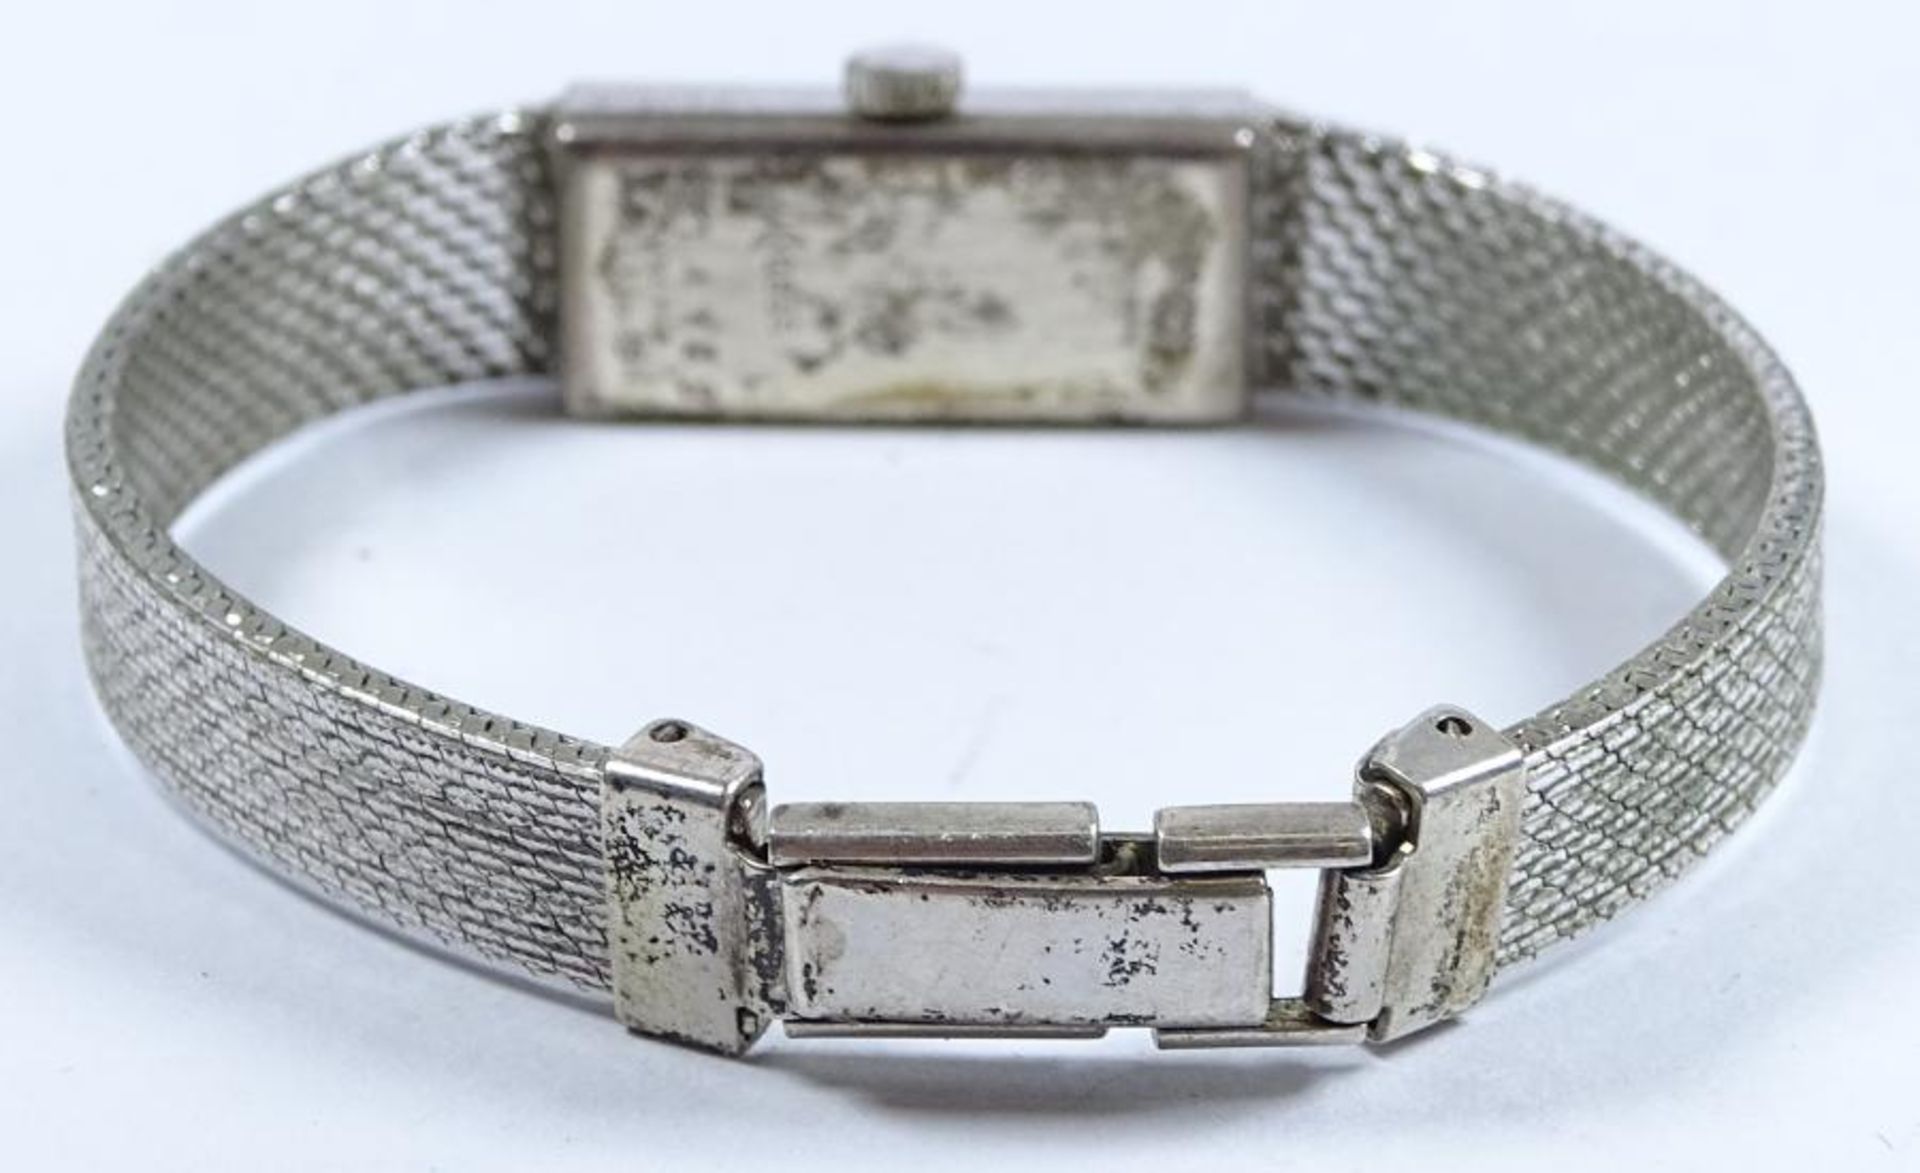 Damen Armbanduhr "Dugena",Handaufzug,Werk läuft,Deckel und Band Silber -835- , ges.gew. 23gr.Gehäuse - Bild 2 aus 3